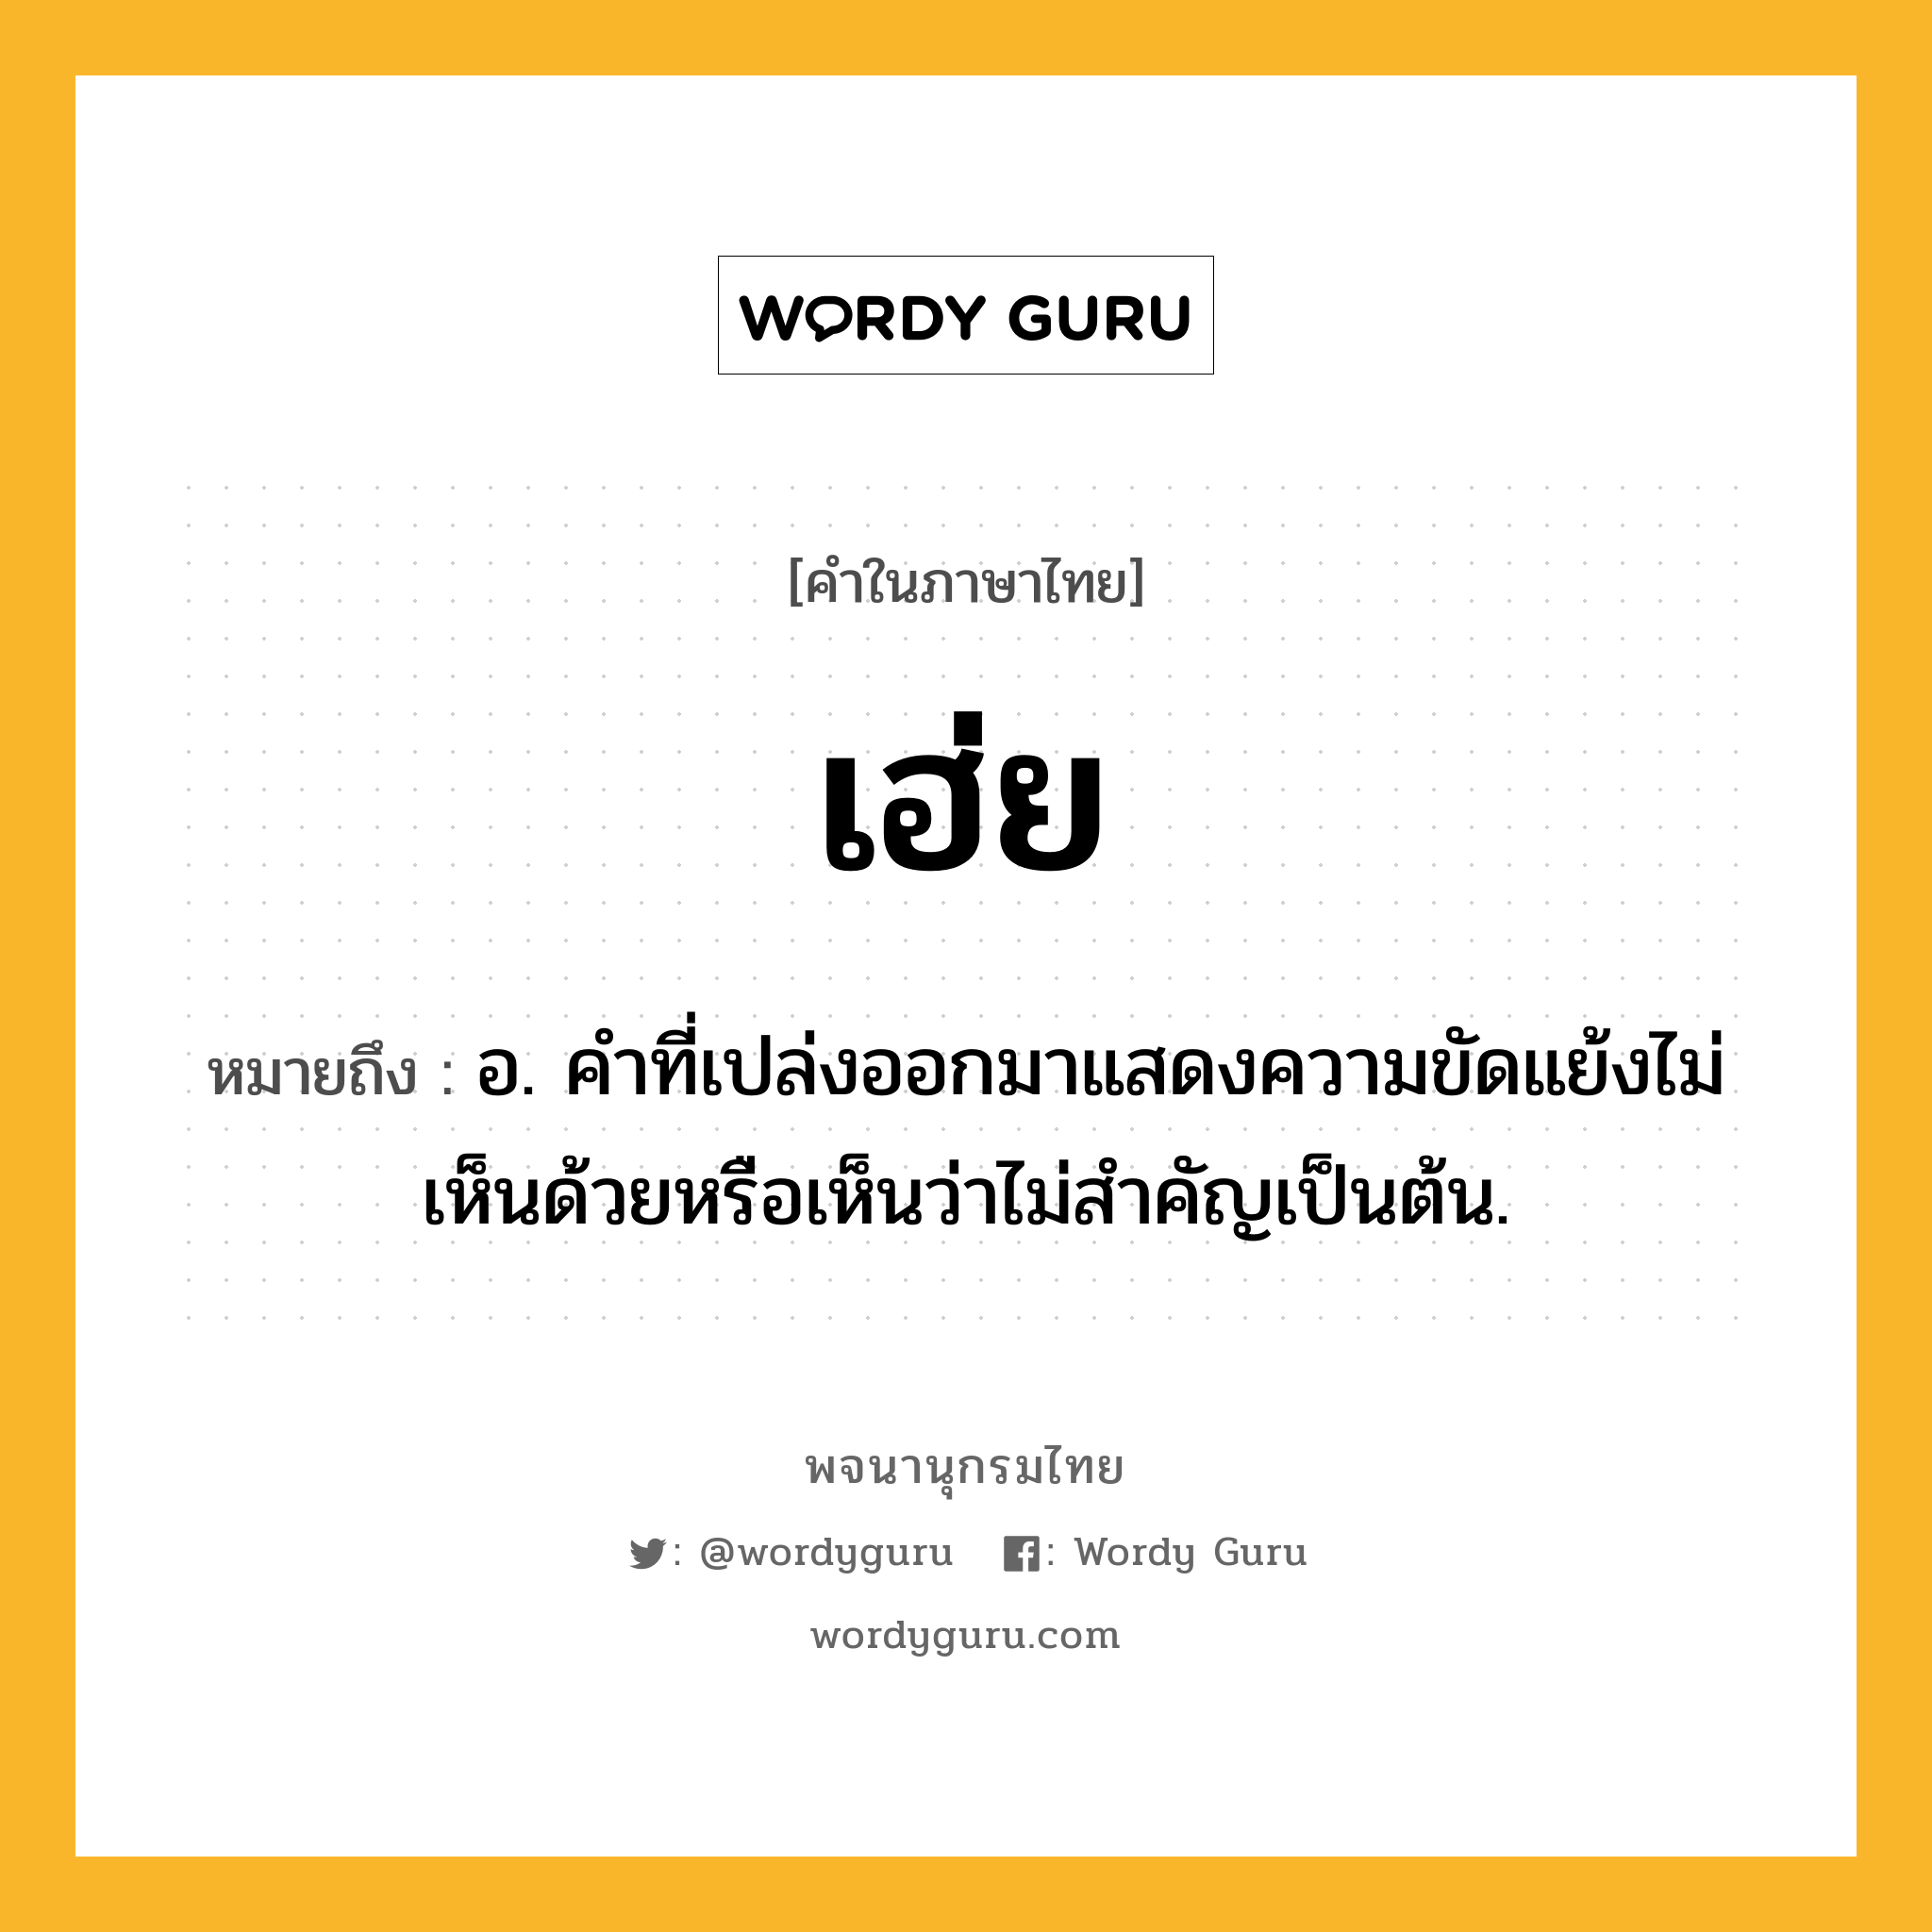 เฮ่ย ความหมาย หมายถึงอะไร?, คำในภาษาไทย เฮ่ย หมายถึง อ. คำที่เปล่งออกมาแสดงความขัดแย้งไม่เห็นด้วยหรือเห็นว่าไม่สำคัญเป็นต้น.